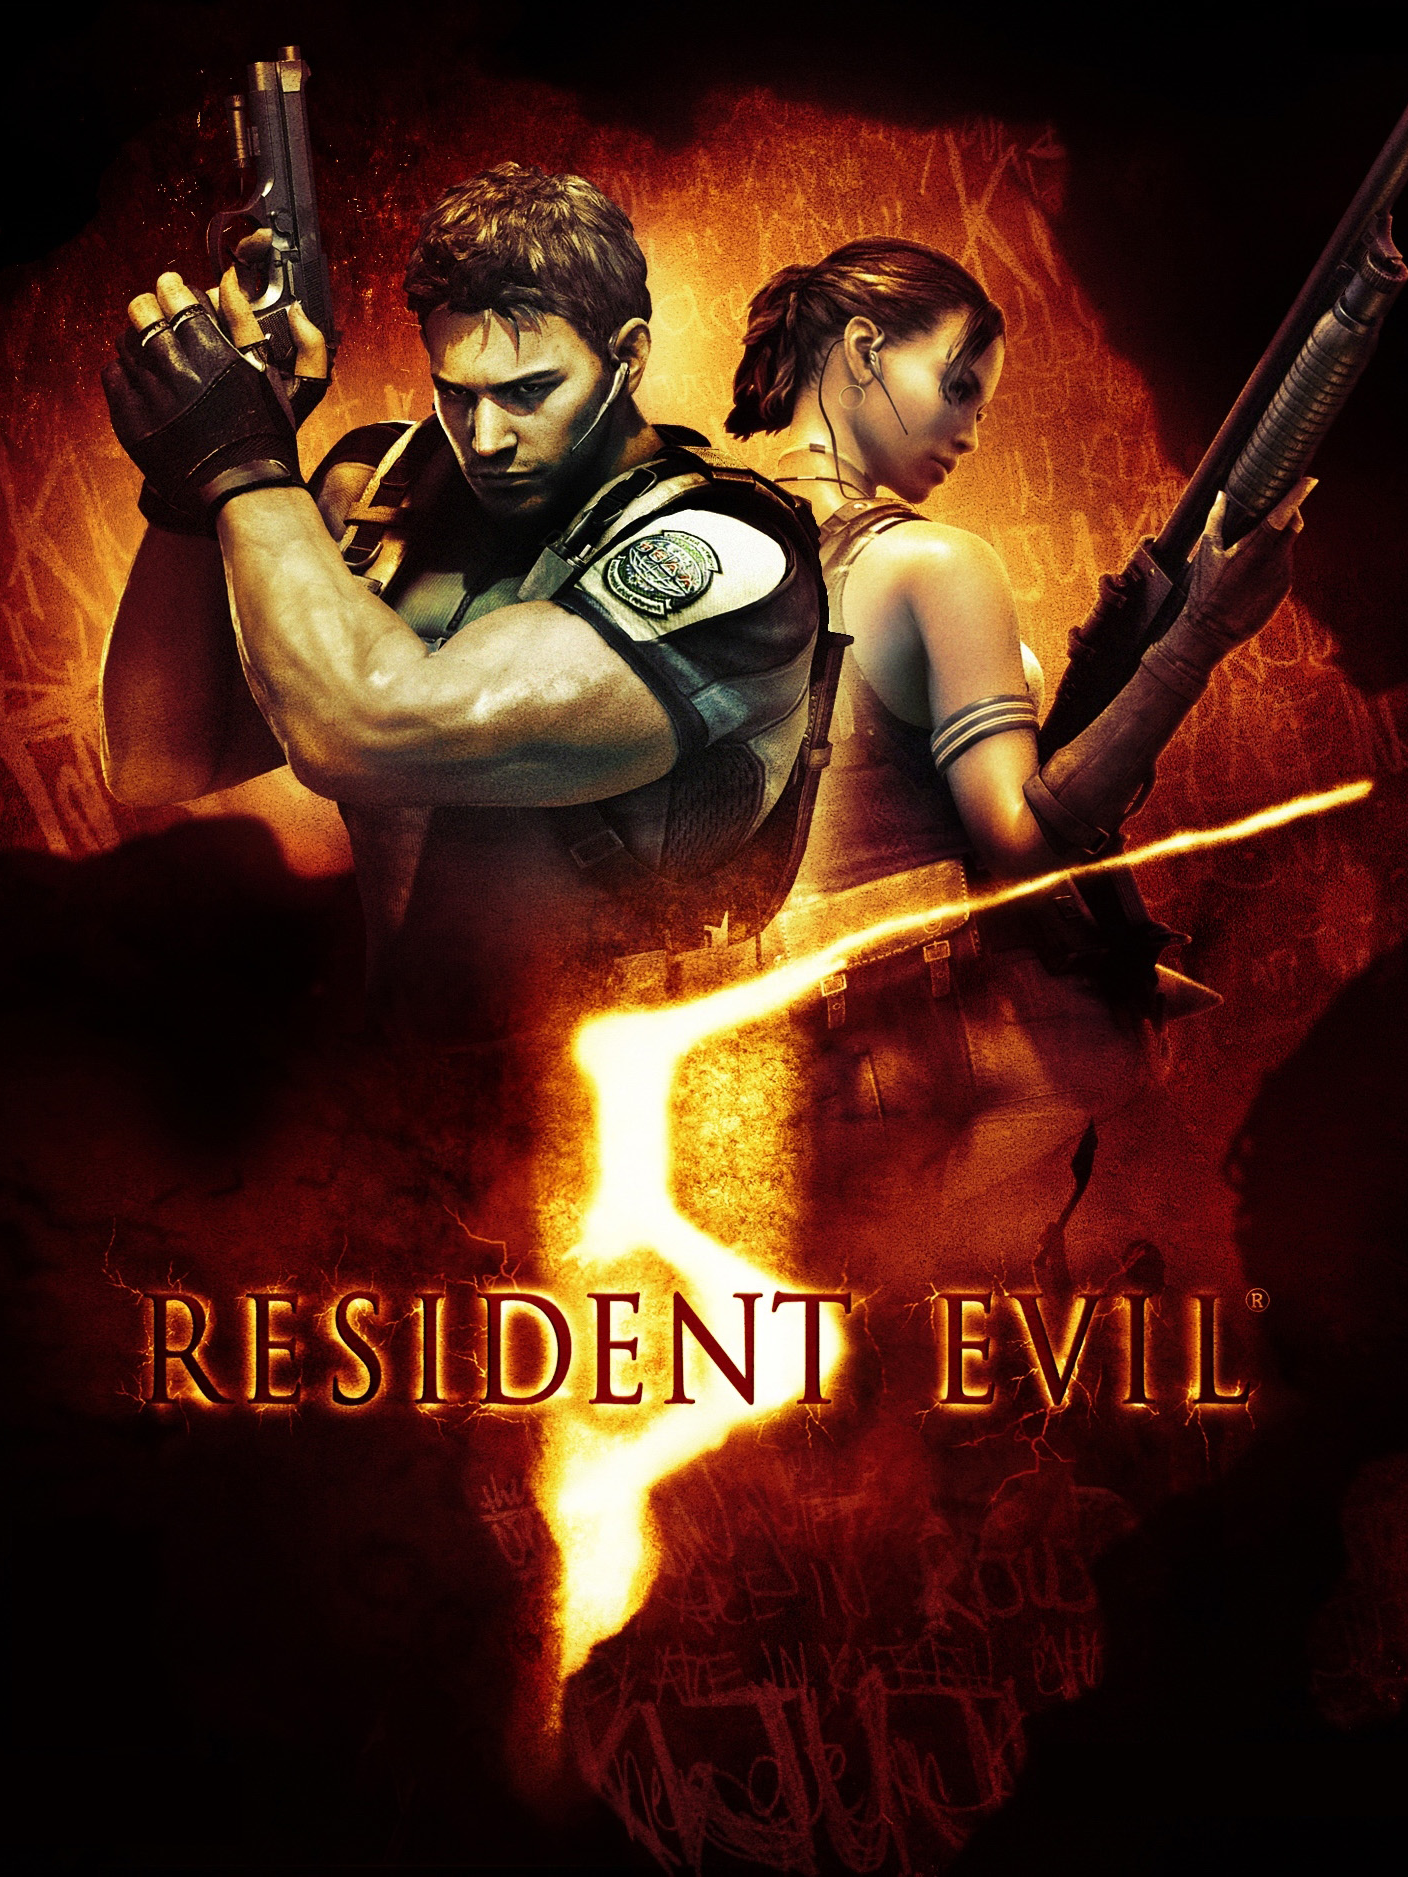 Image of Resident Evil 5